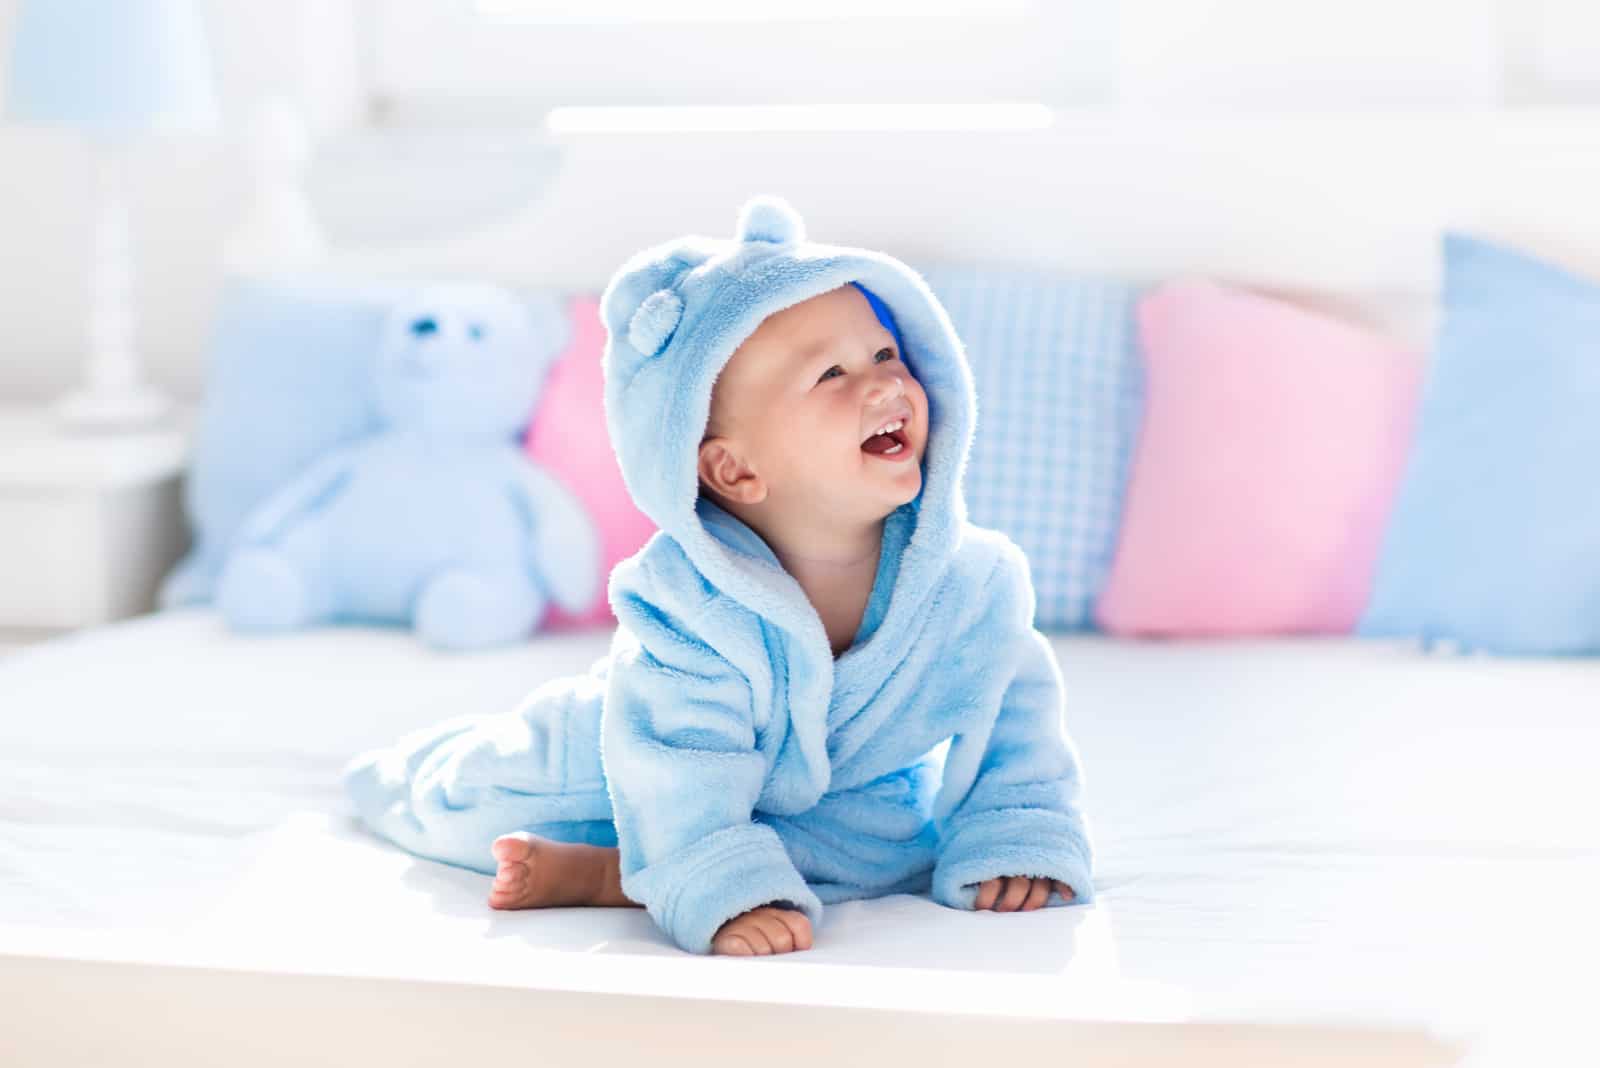 laughing baby boy in soft bathrobe